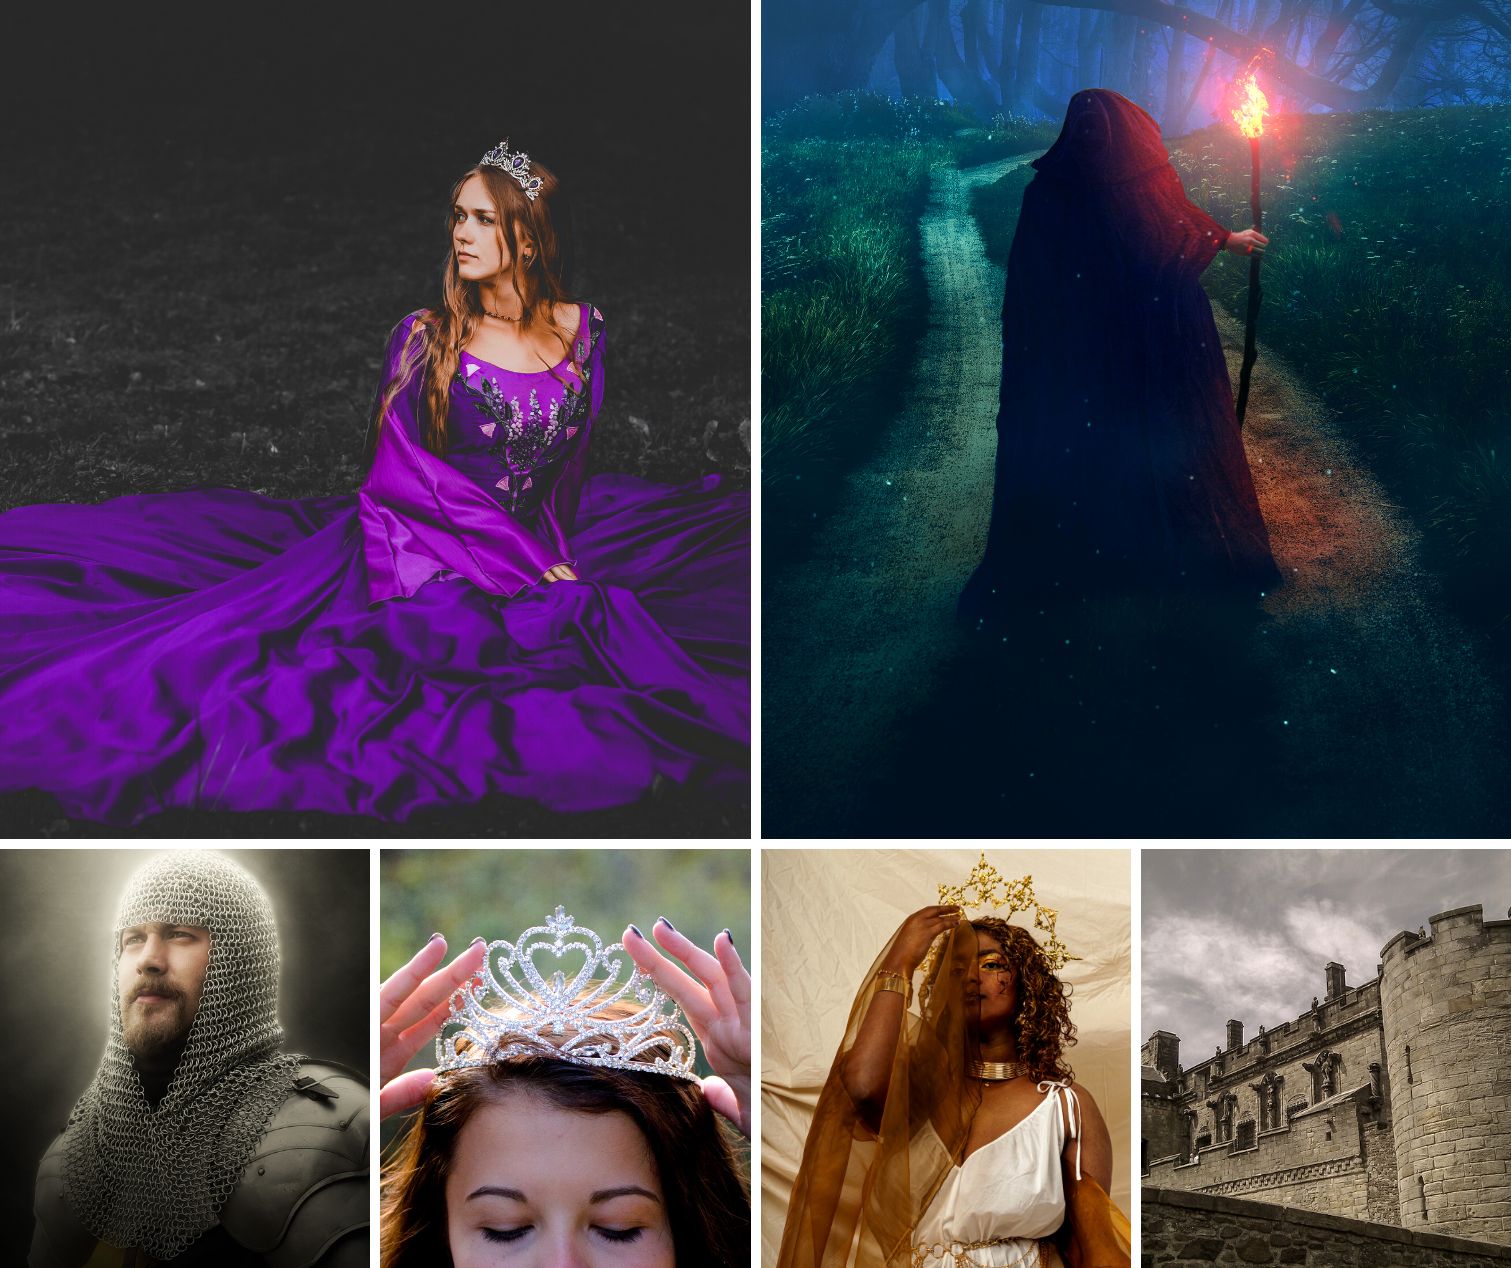 Ideia de quadro visual com imagens de uma princesa, uma feiticeira de costas usando um cetro, um cavaleiro, um castelo feito de pedras, uma moça colocando uma coroa sobre a cabeça e uma rainha de coroa dourada